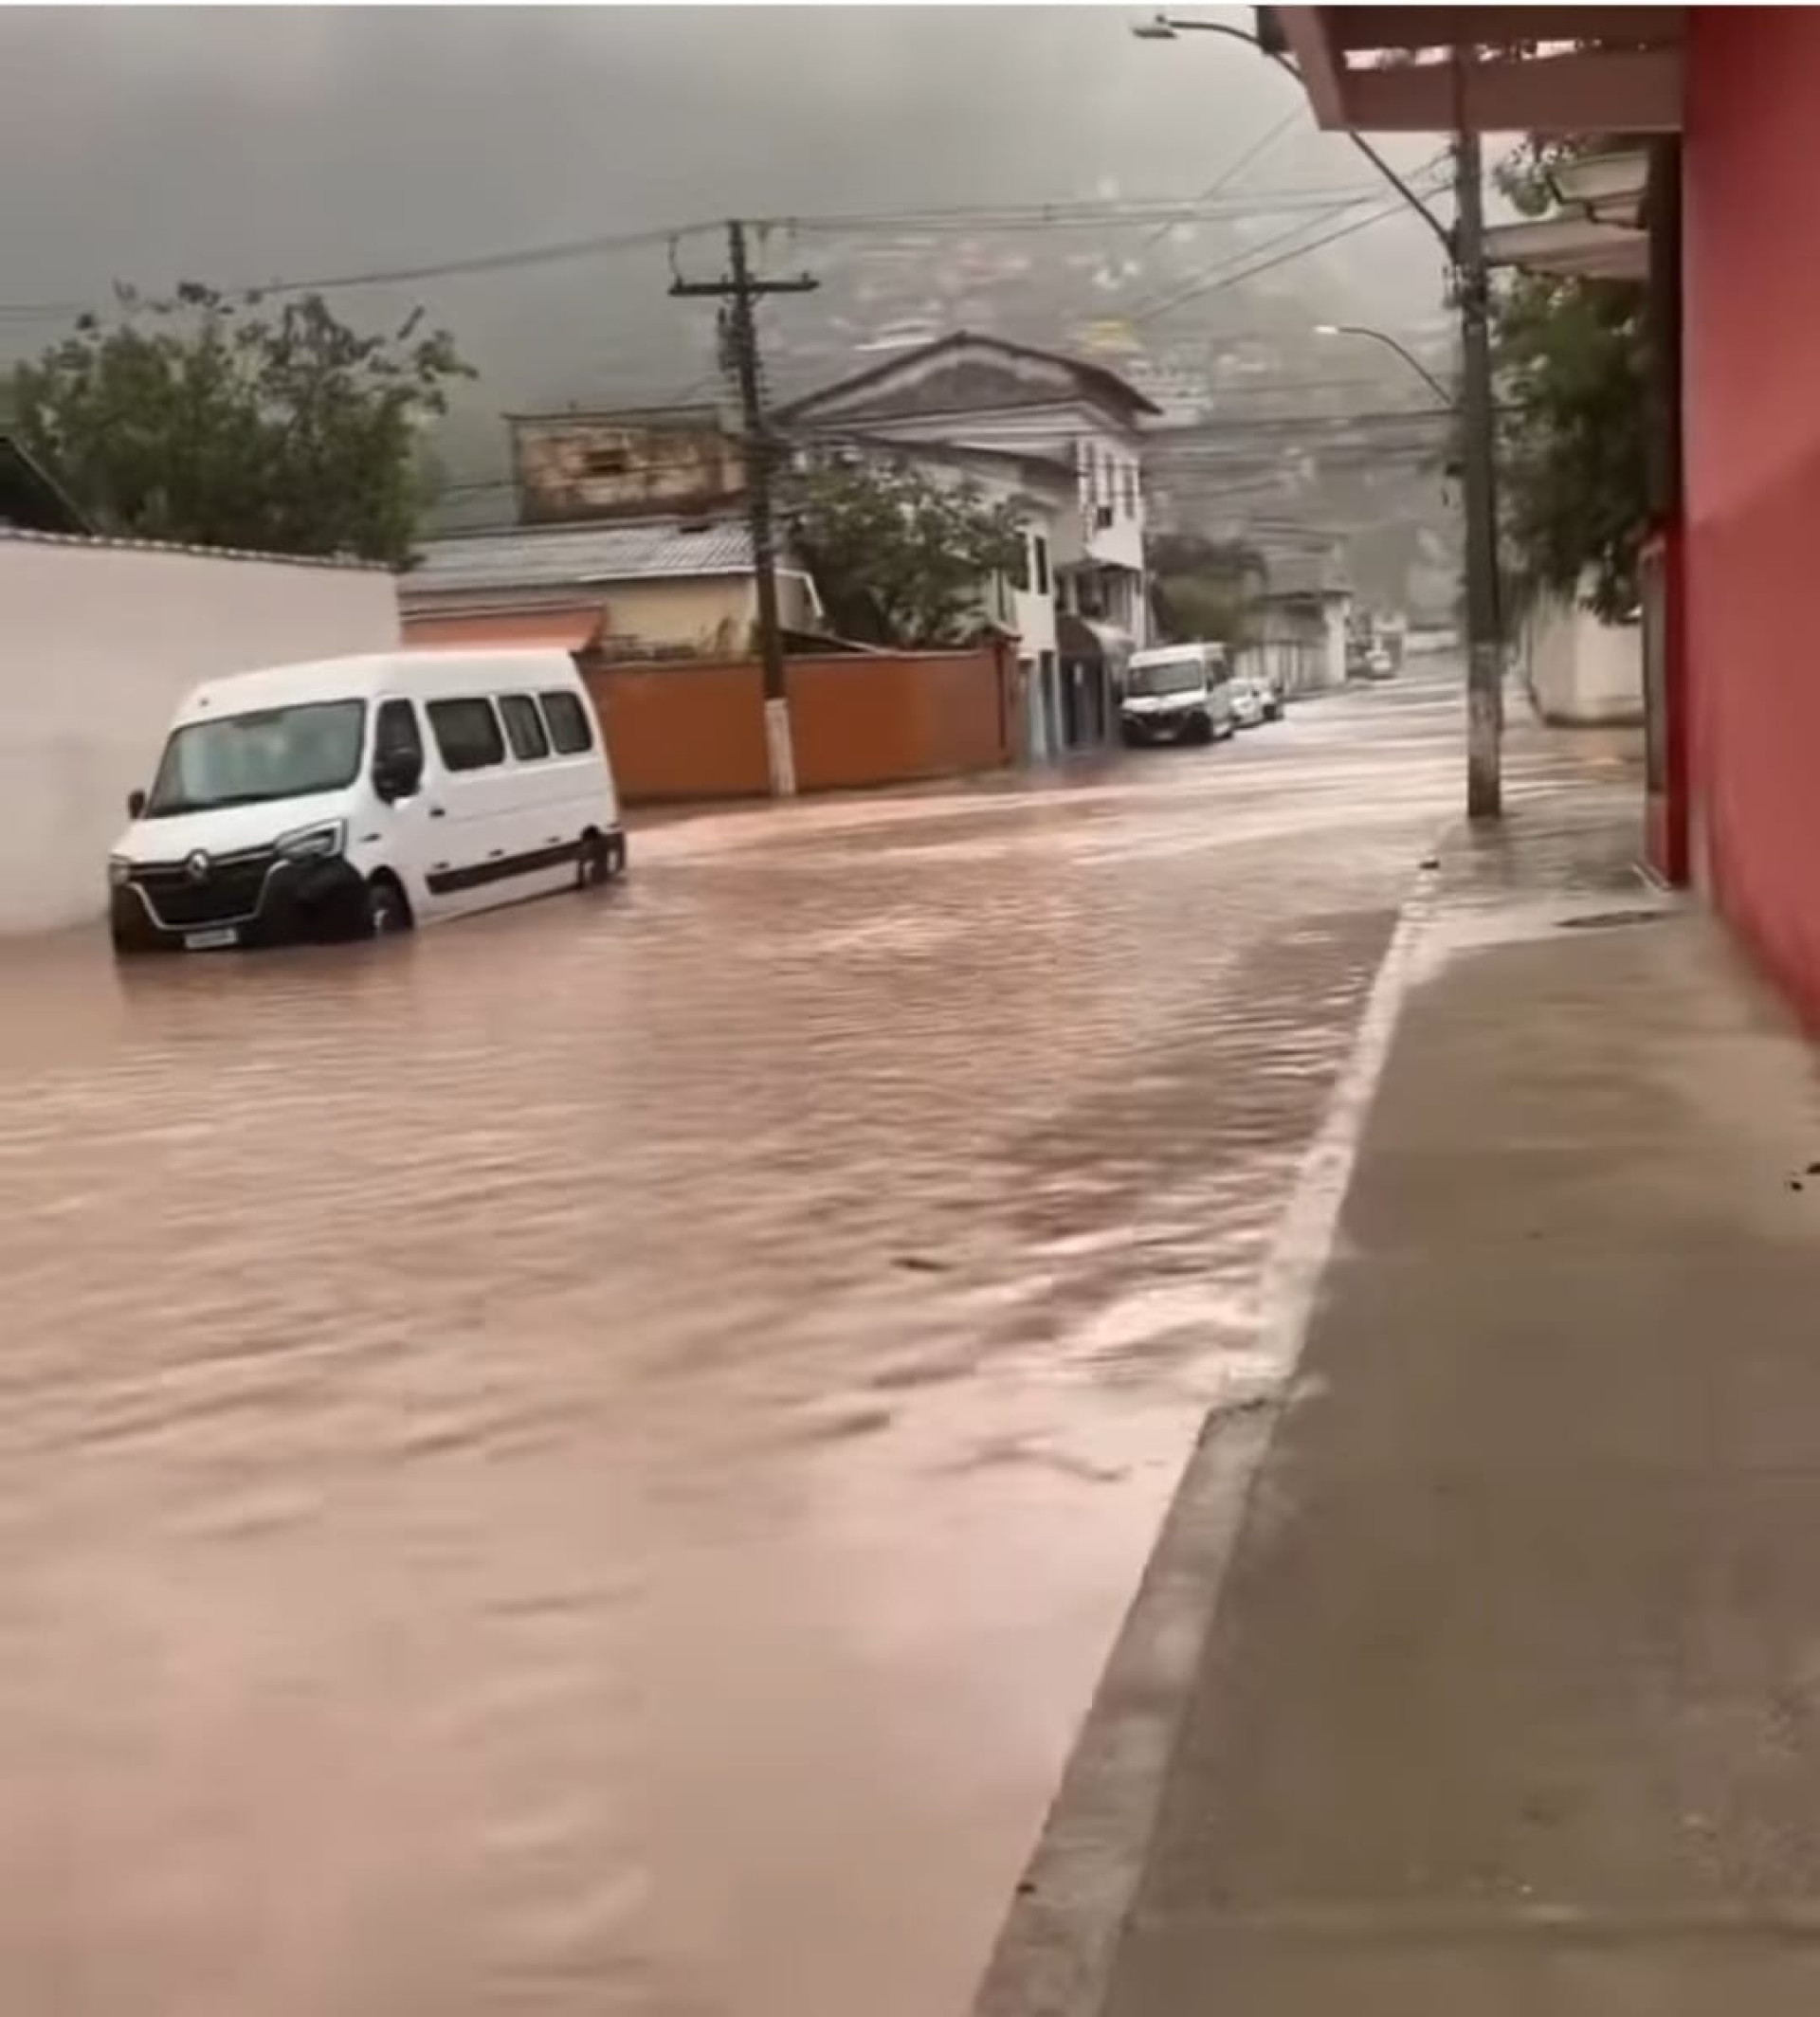 Bairro Balneário rua alagada com a chuva de ontem - Divulgação/reprodução rede social